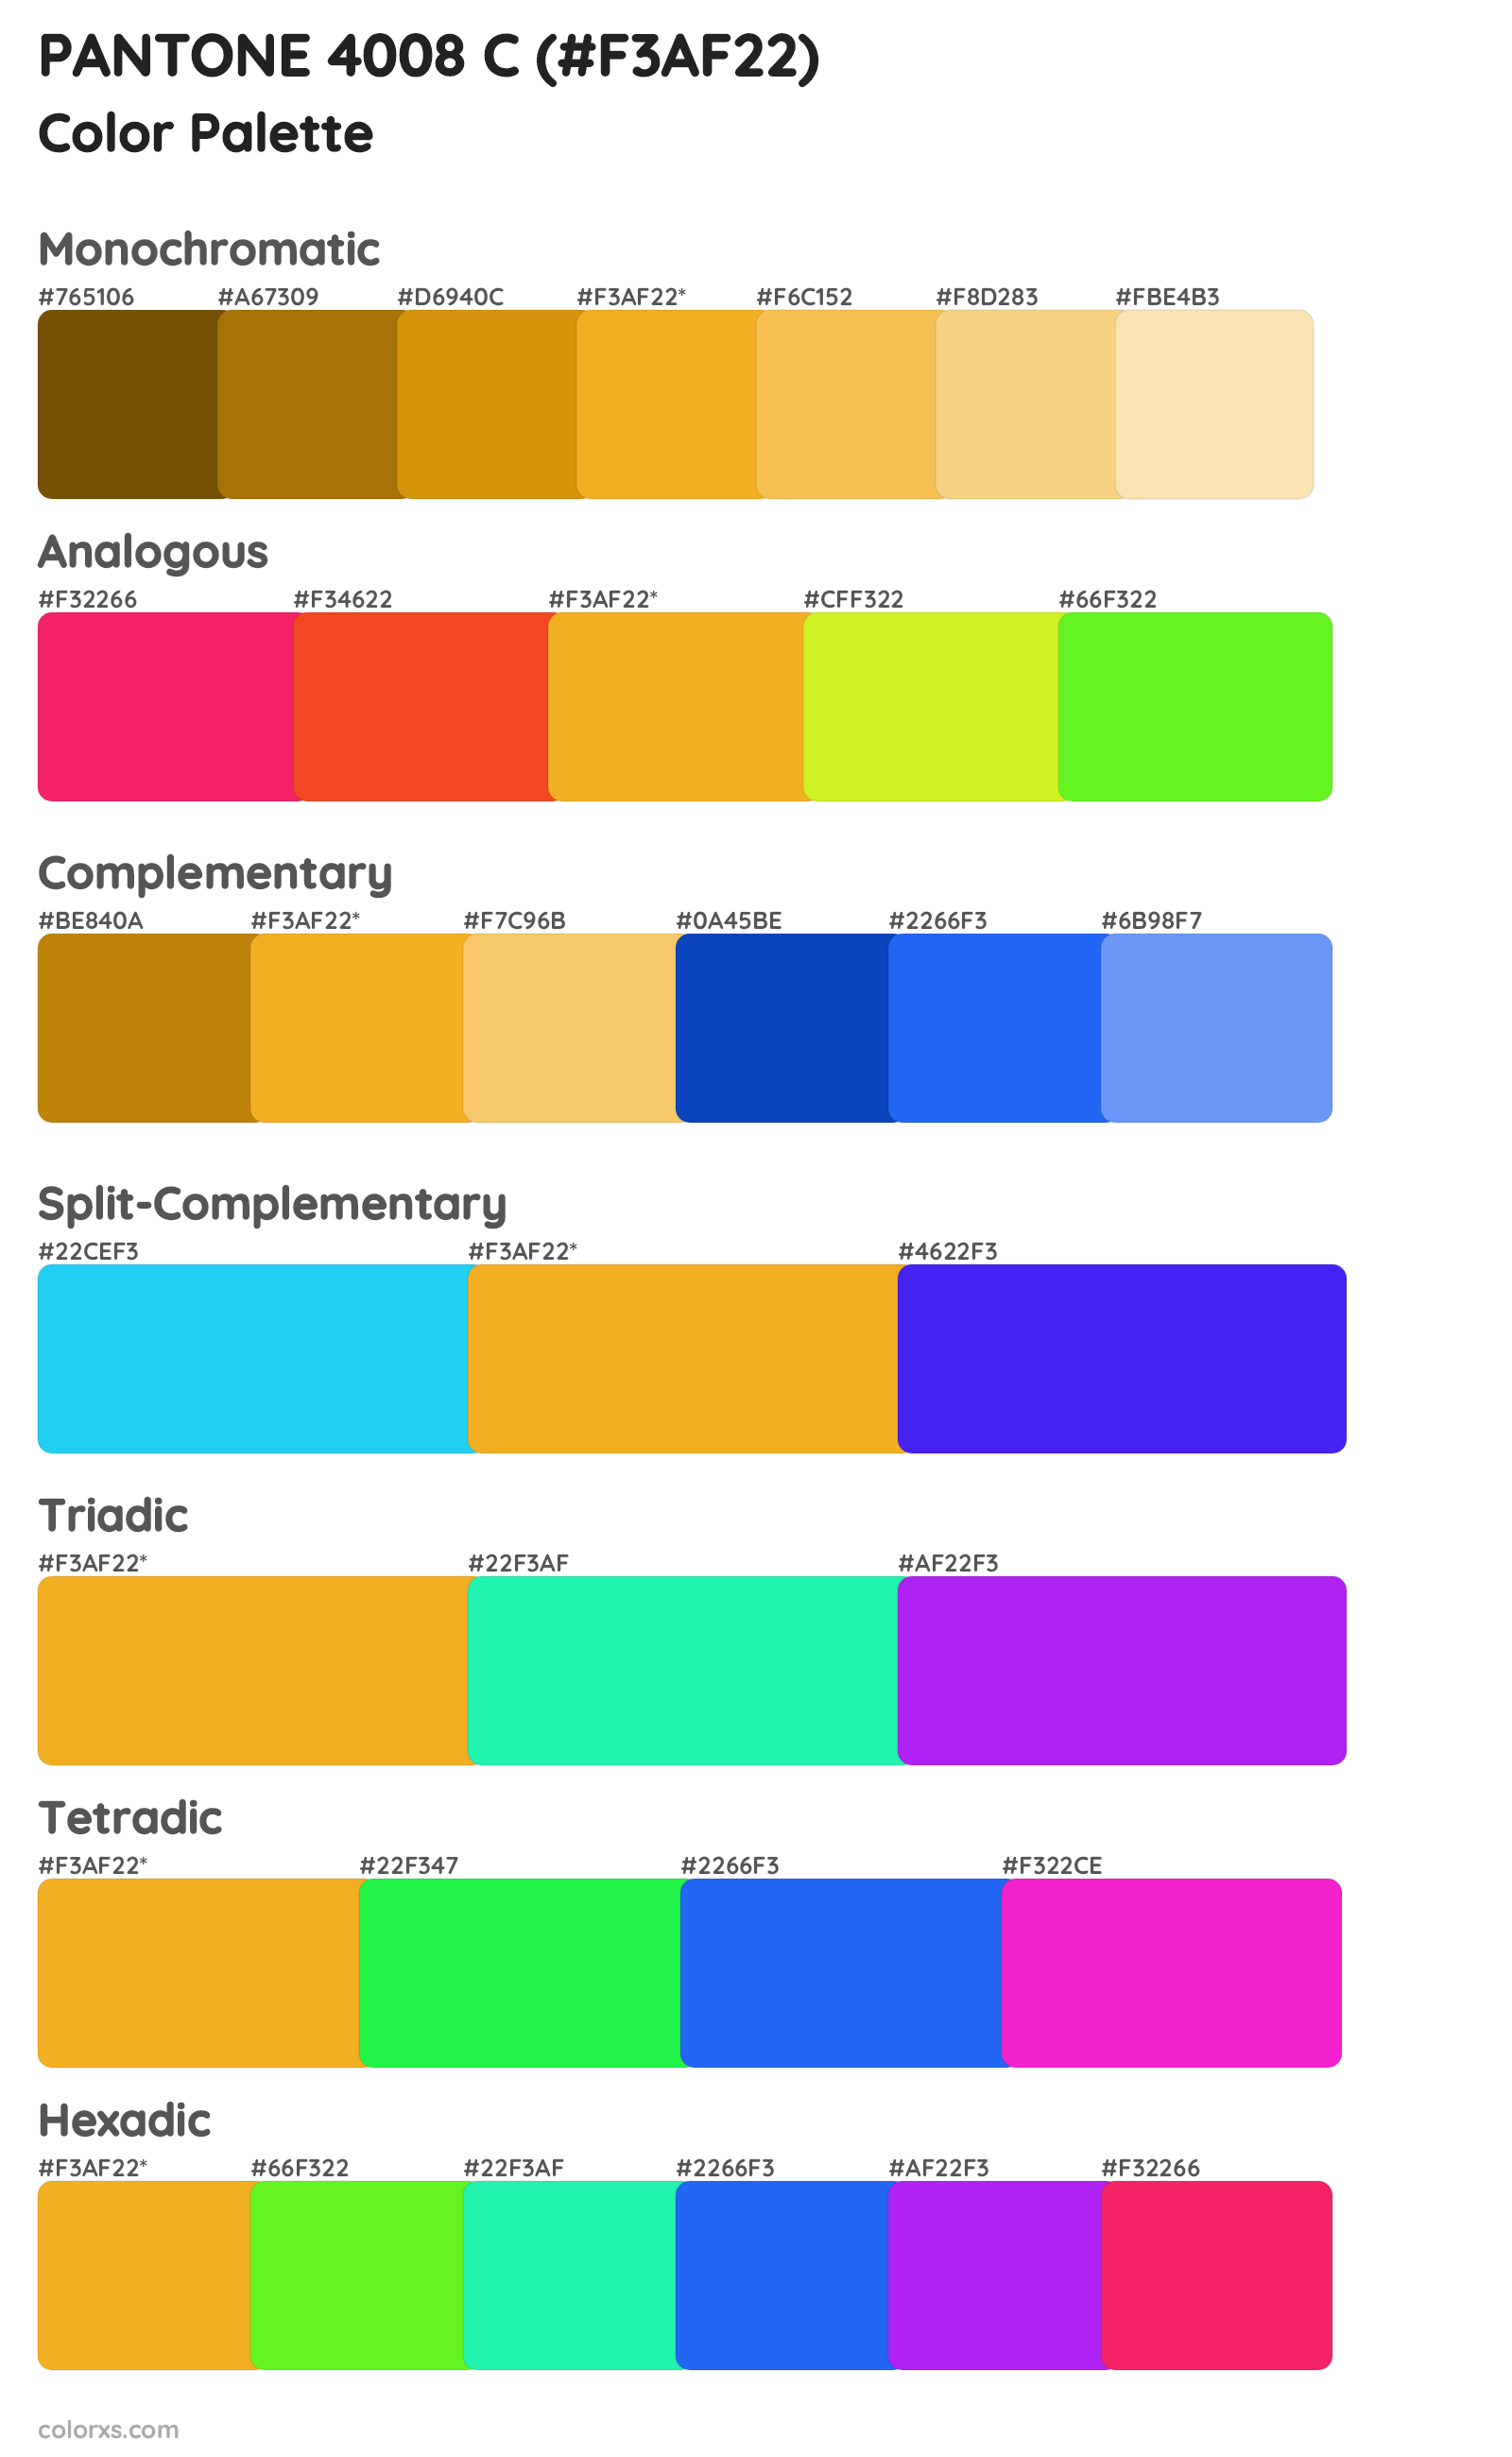 PANTONE 4008 C Color Scheme Palettes